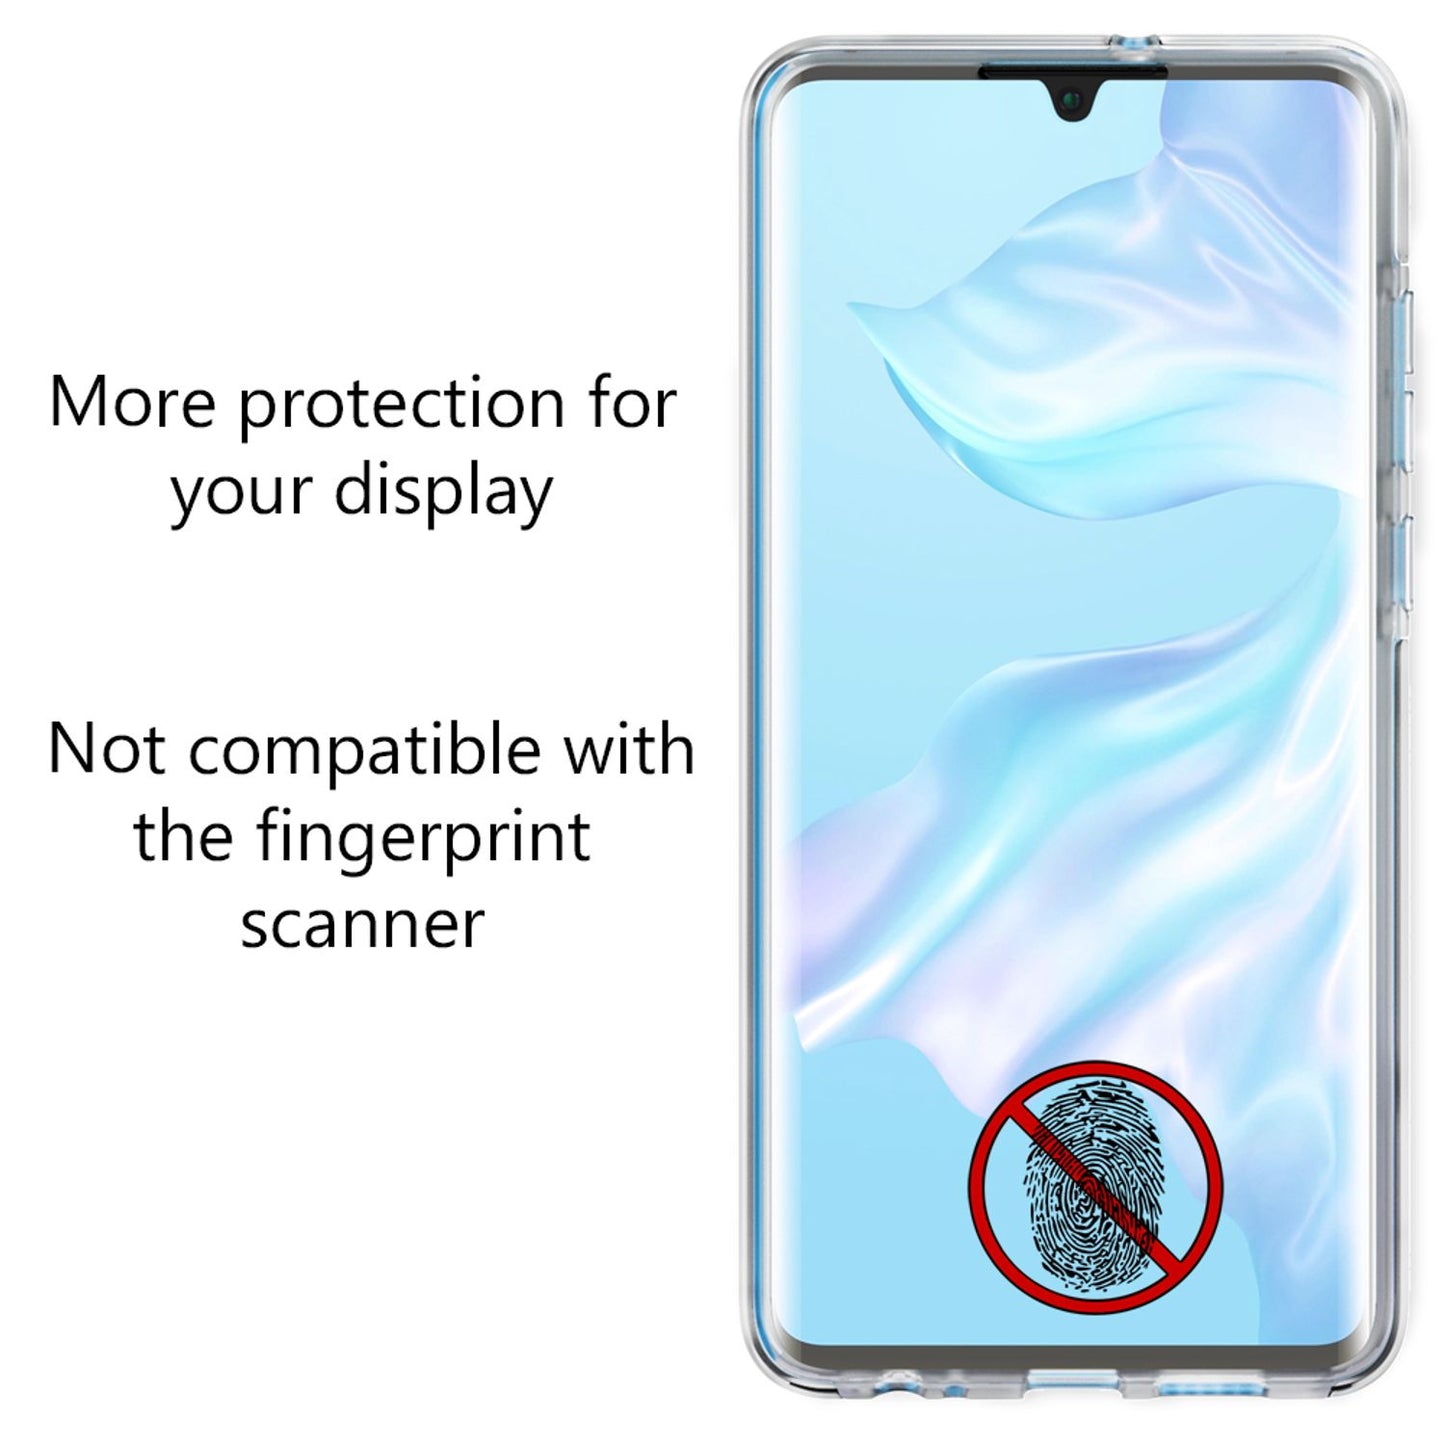 NALIA 360 Grad Handy Hülle für Huawei P30, Slim Schutz Case Cover Tasche Bumper